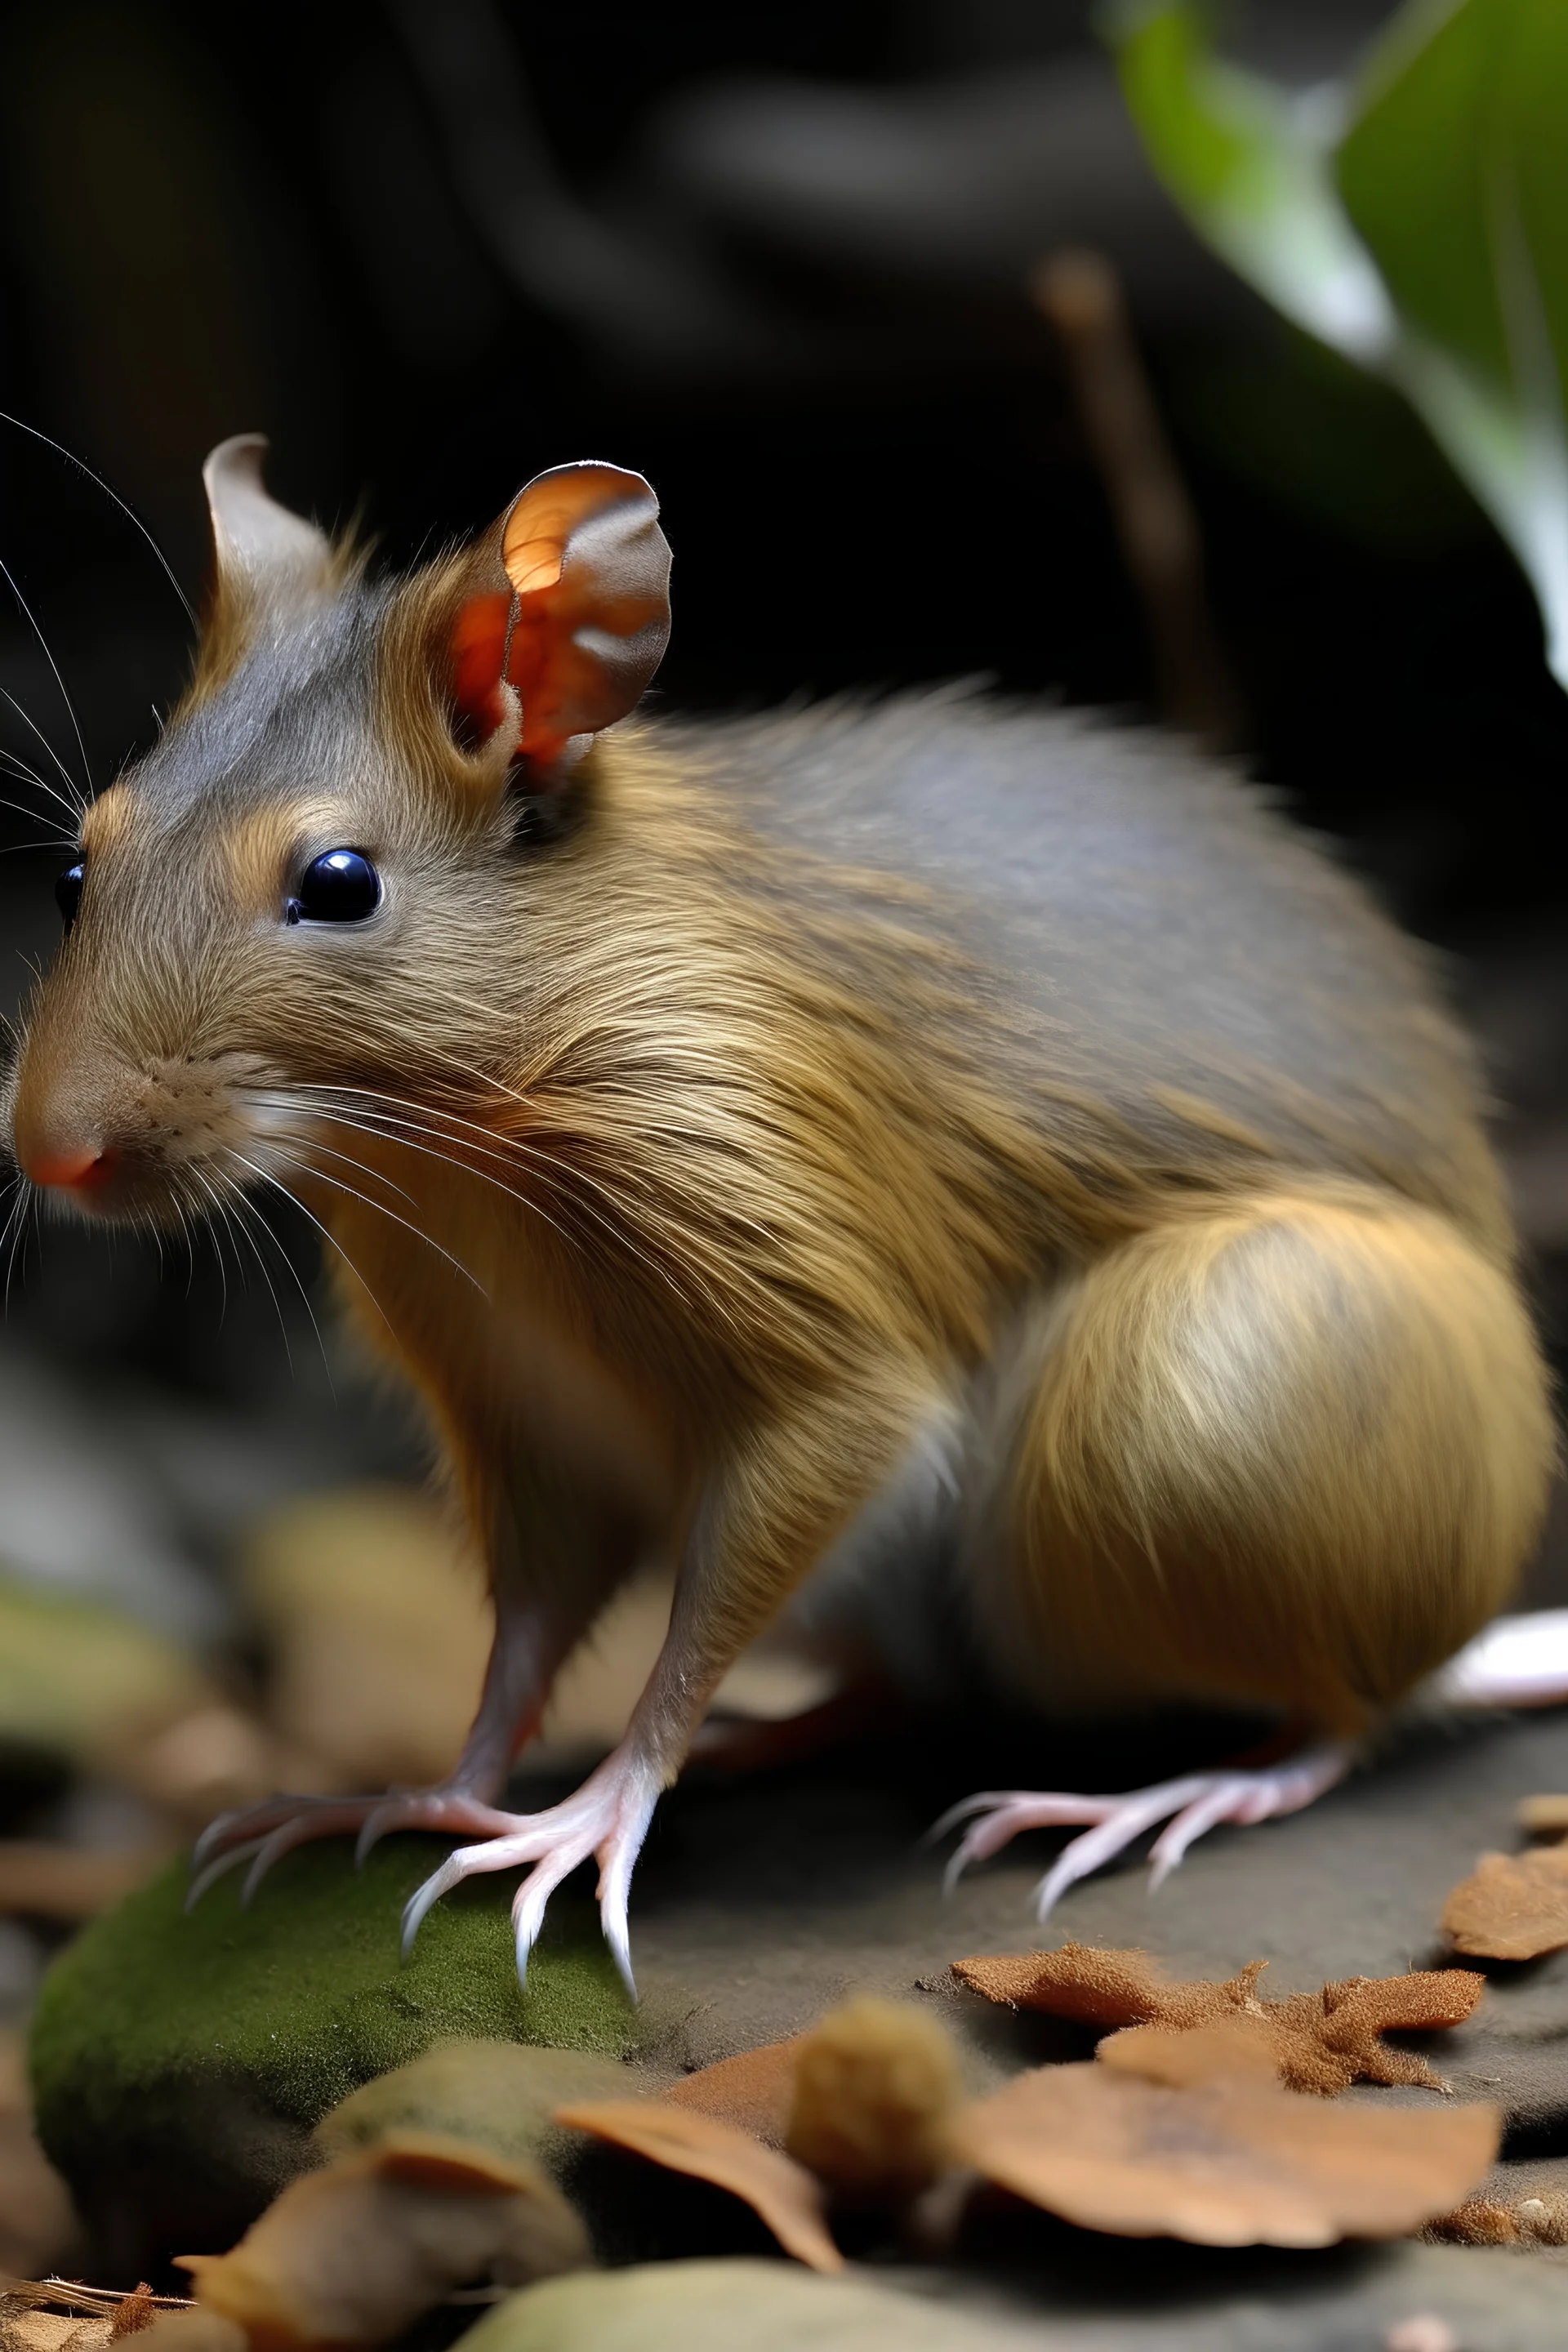 una nueva rara especie de roedor con cuerpo alargado, con patas traseras musculosas, grandes y largas y delanteras hábiles para coger frutos.